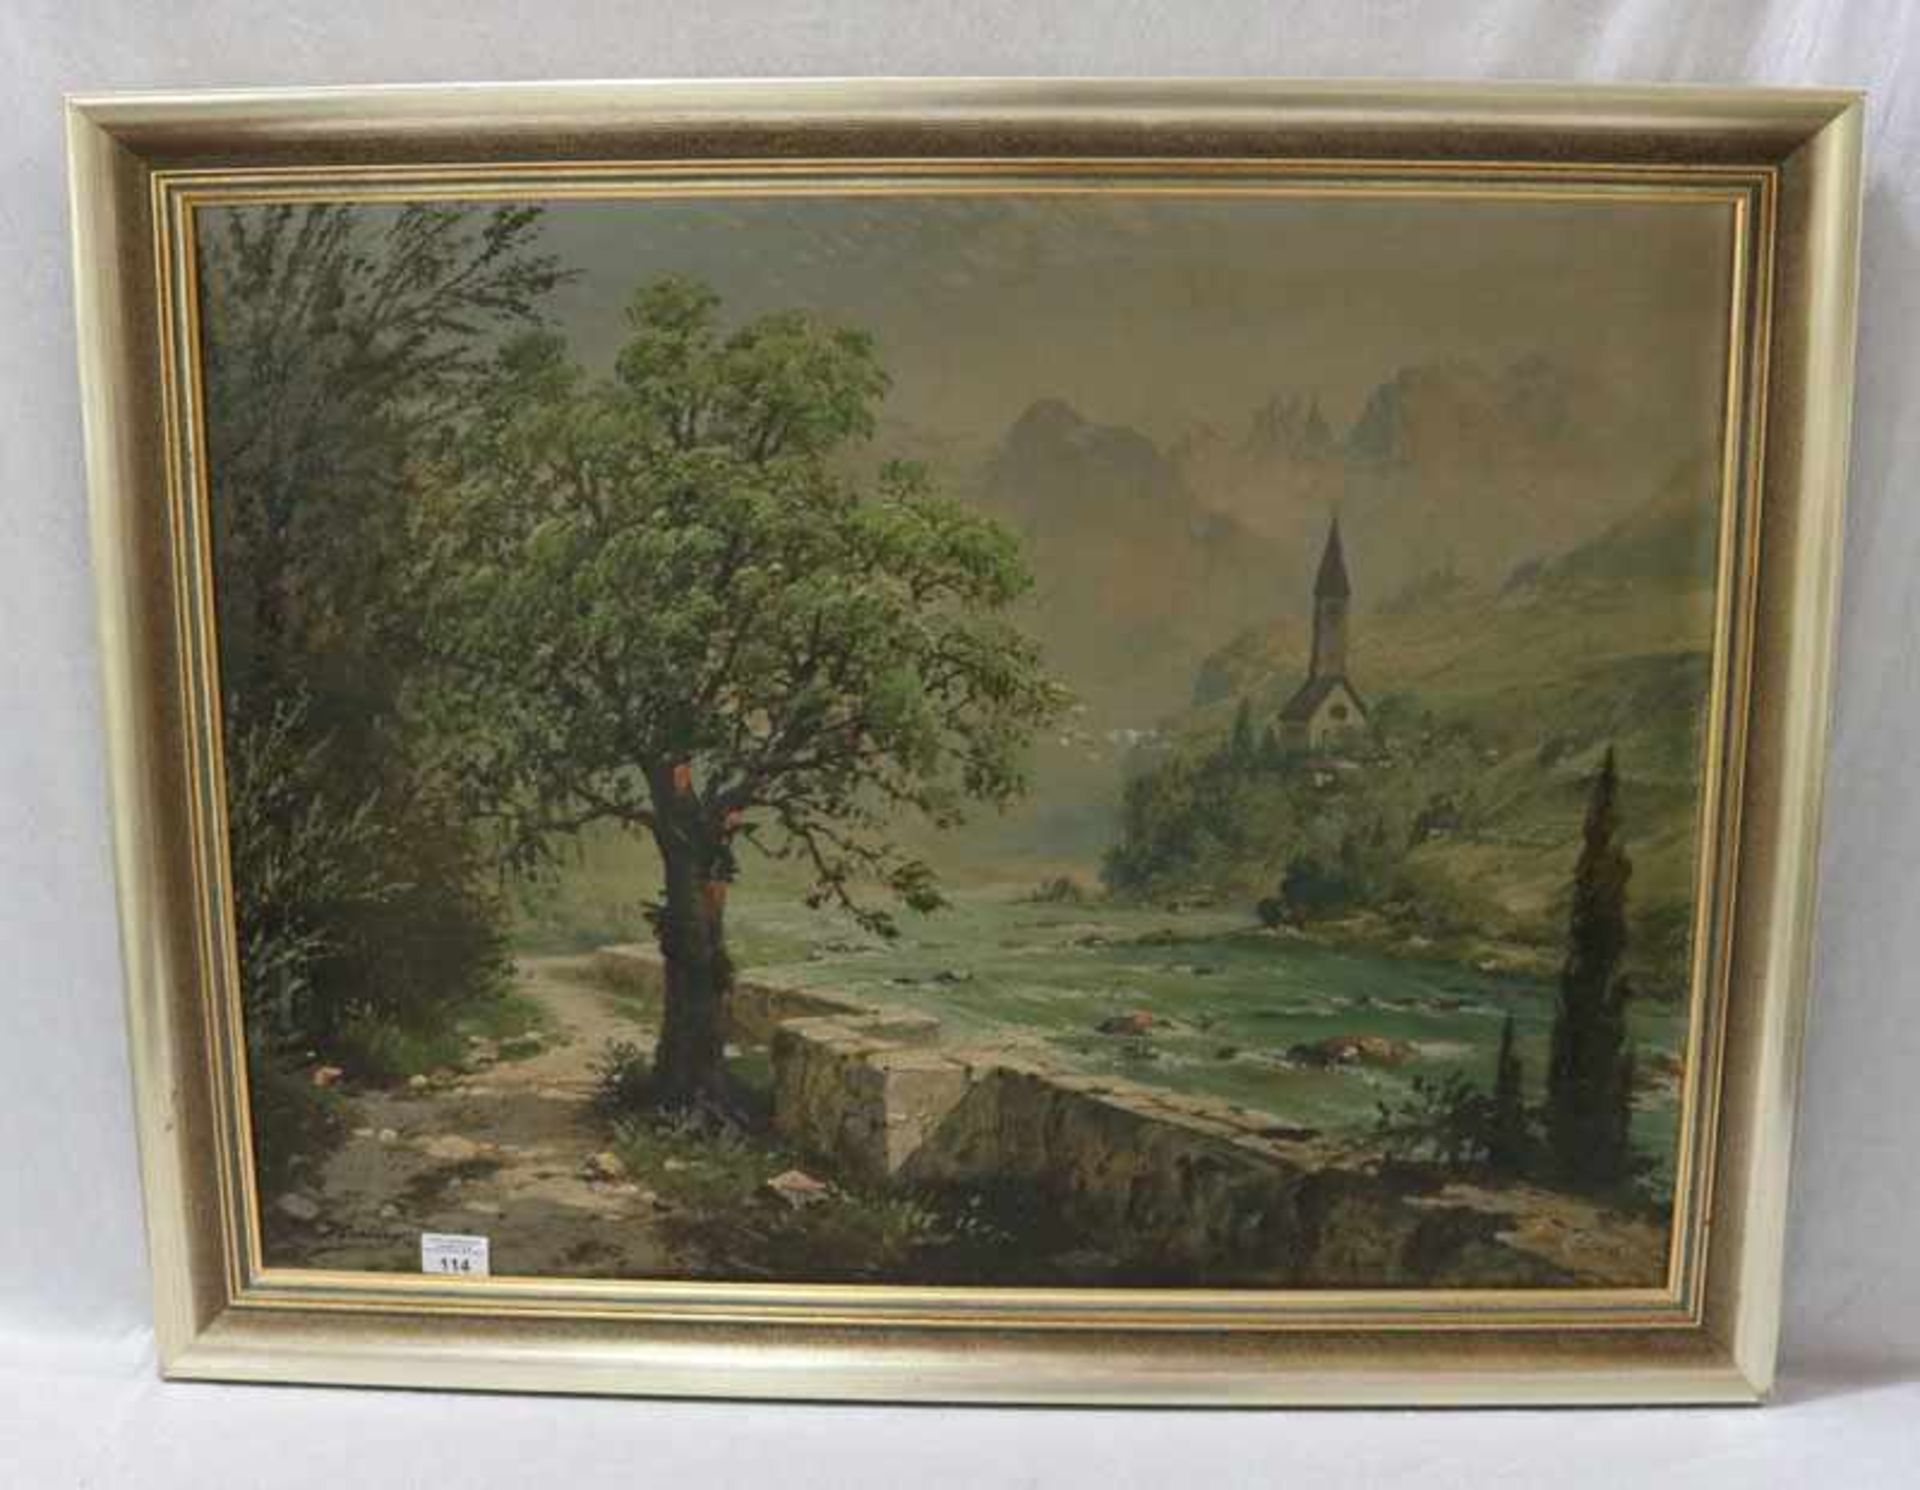 Gemälde ÖL/LW 'Landschafts-Szenerie mit Kirche in den Dolomiten', undeutlich signiert, gerahmt,